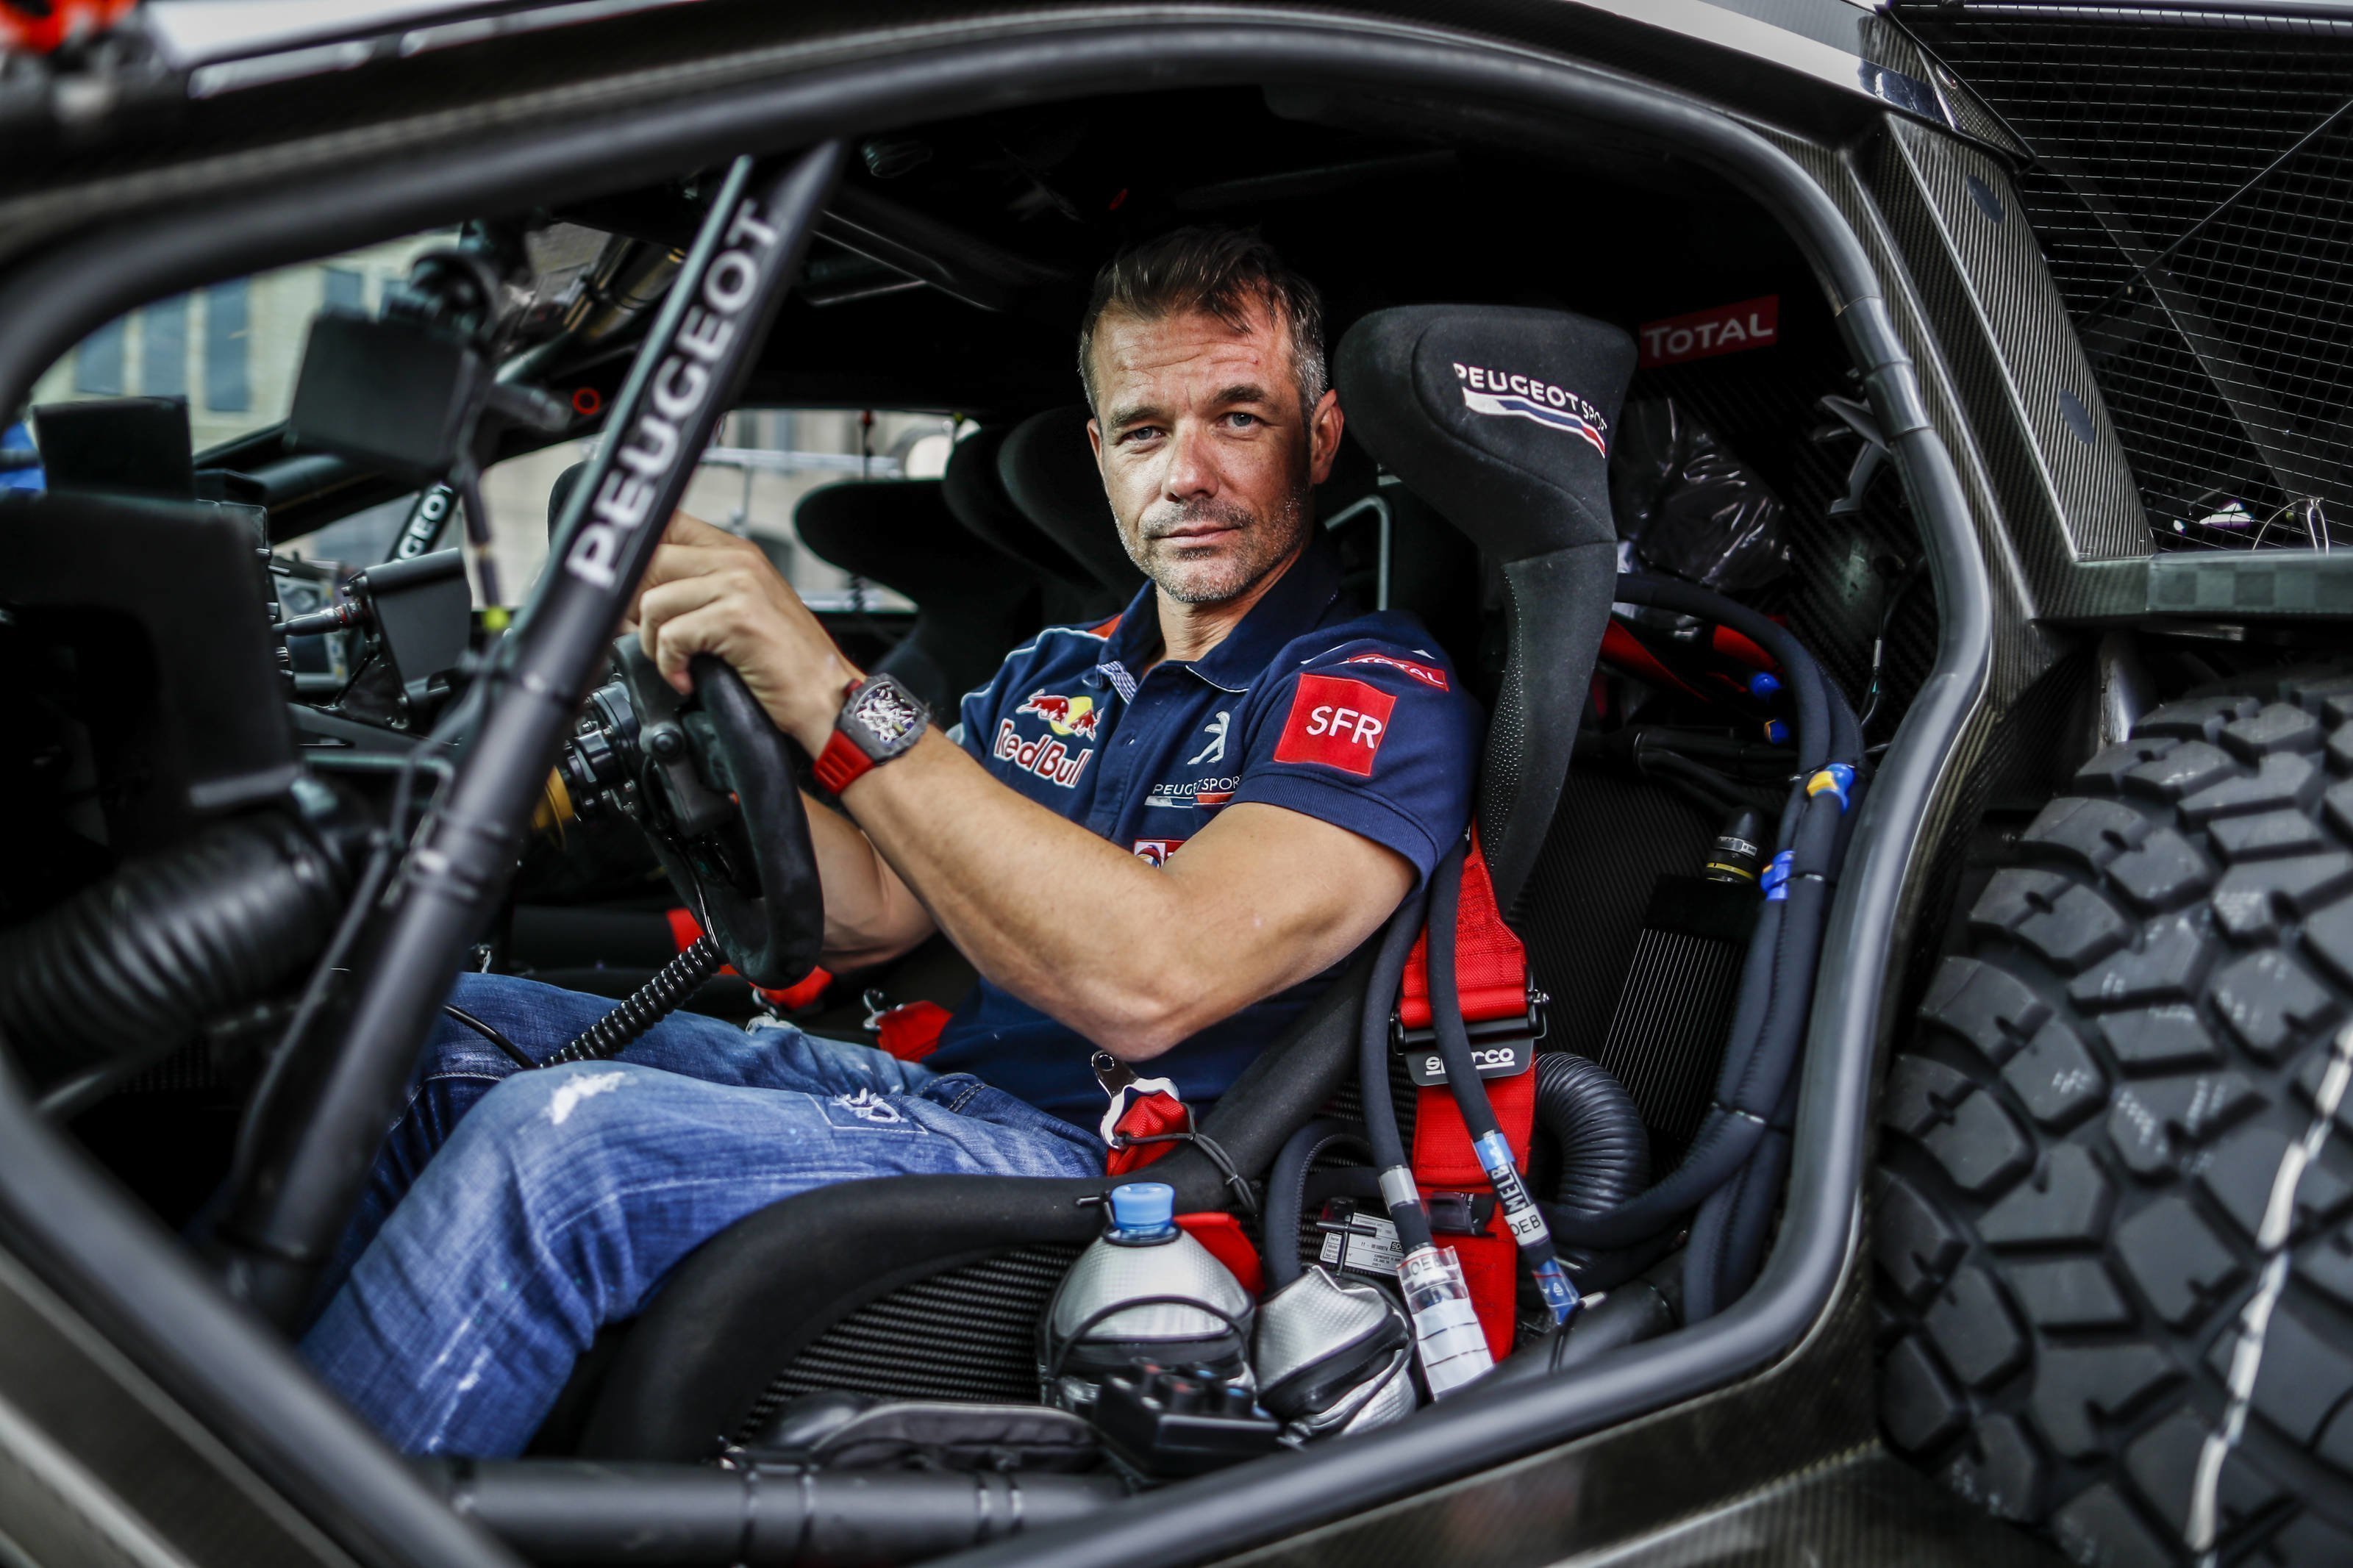 Себастьен Лёб высказал своё мнение об автомобилях WRC: «Новые автомобили выглядят очень крутыми и быстрыми – быстрее, чем раньше. Пилотировать их должно быть захватывающе для гонщиков»